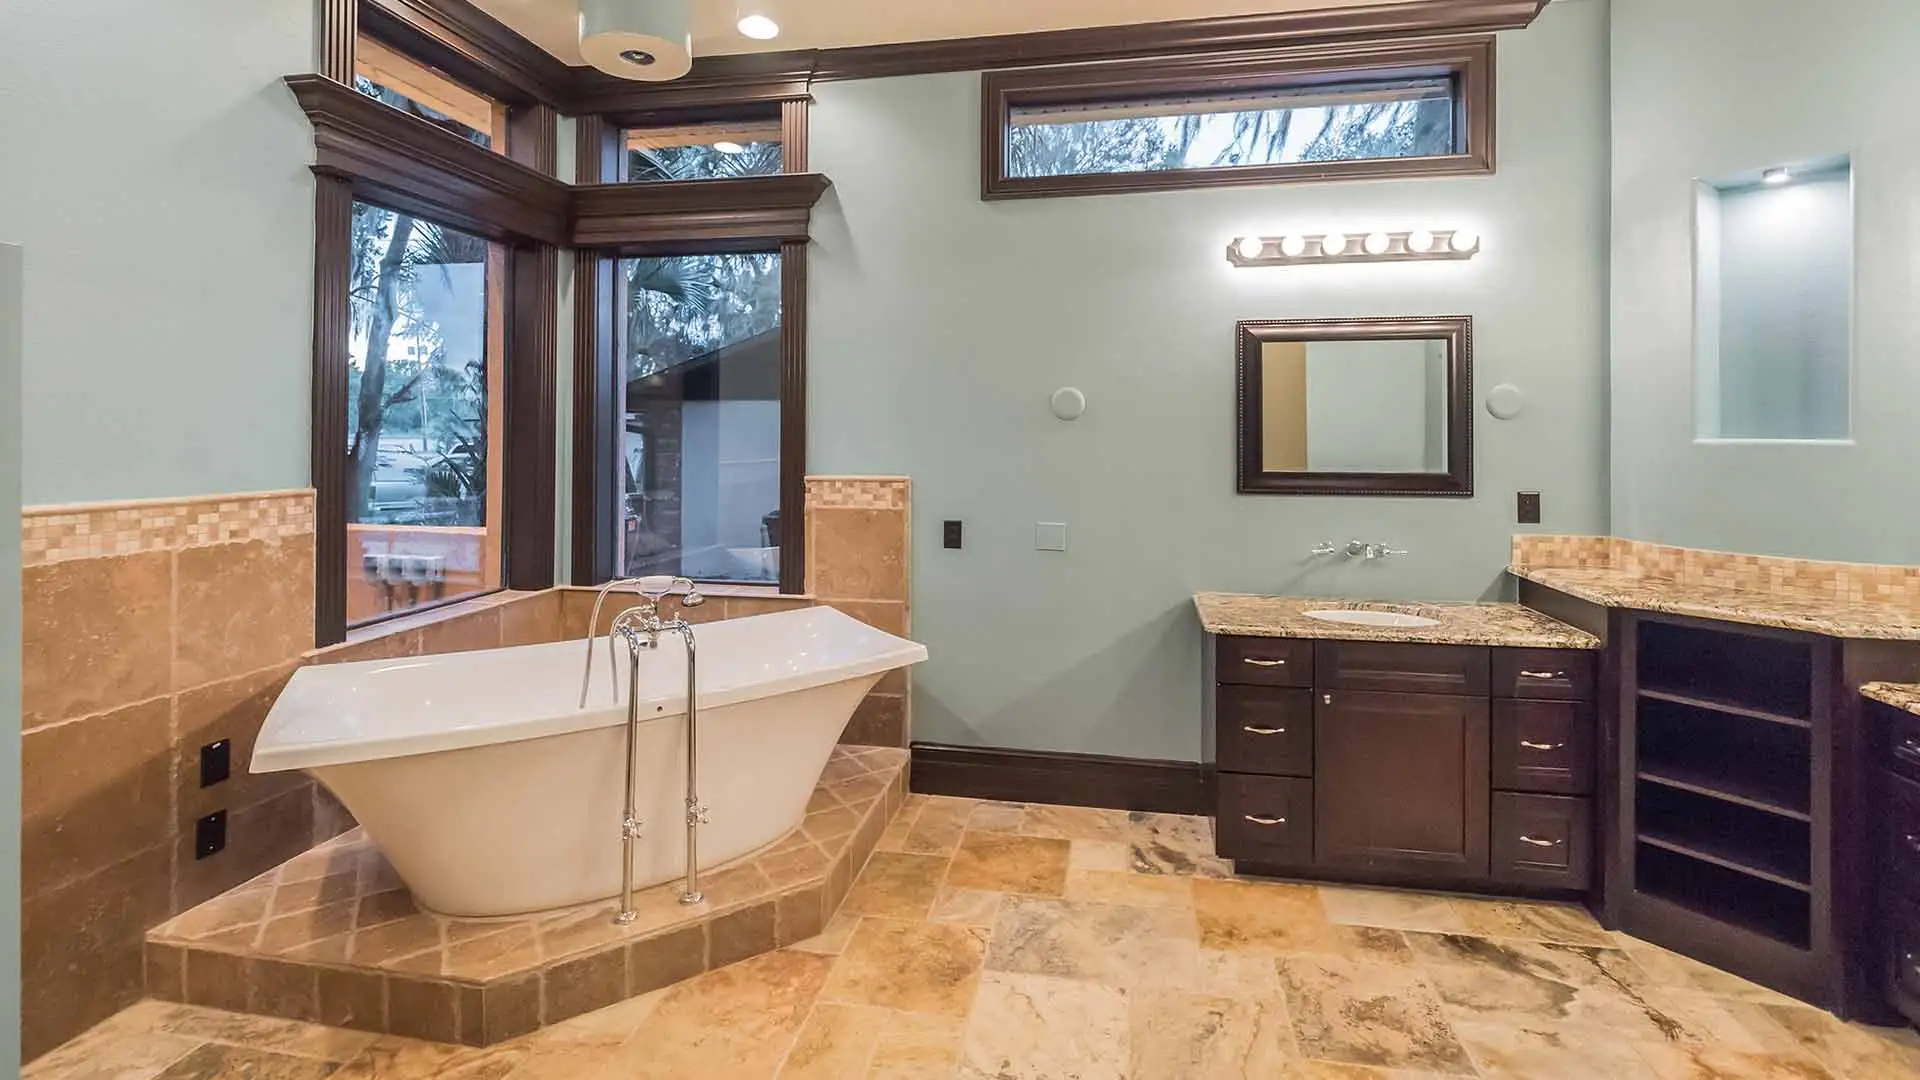 Bathroom Remodel: Walk-in Shower, Bathtub, or Both?